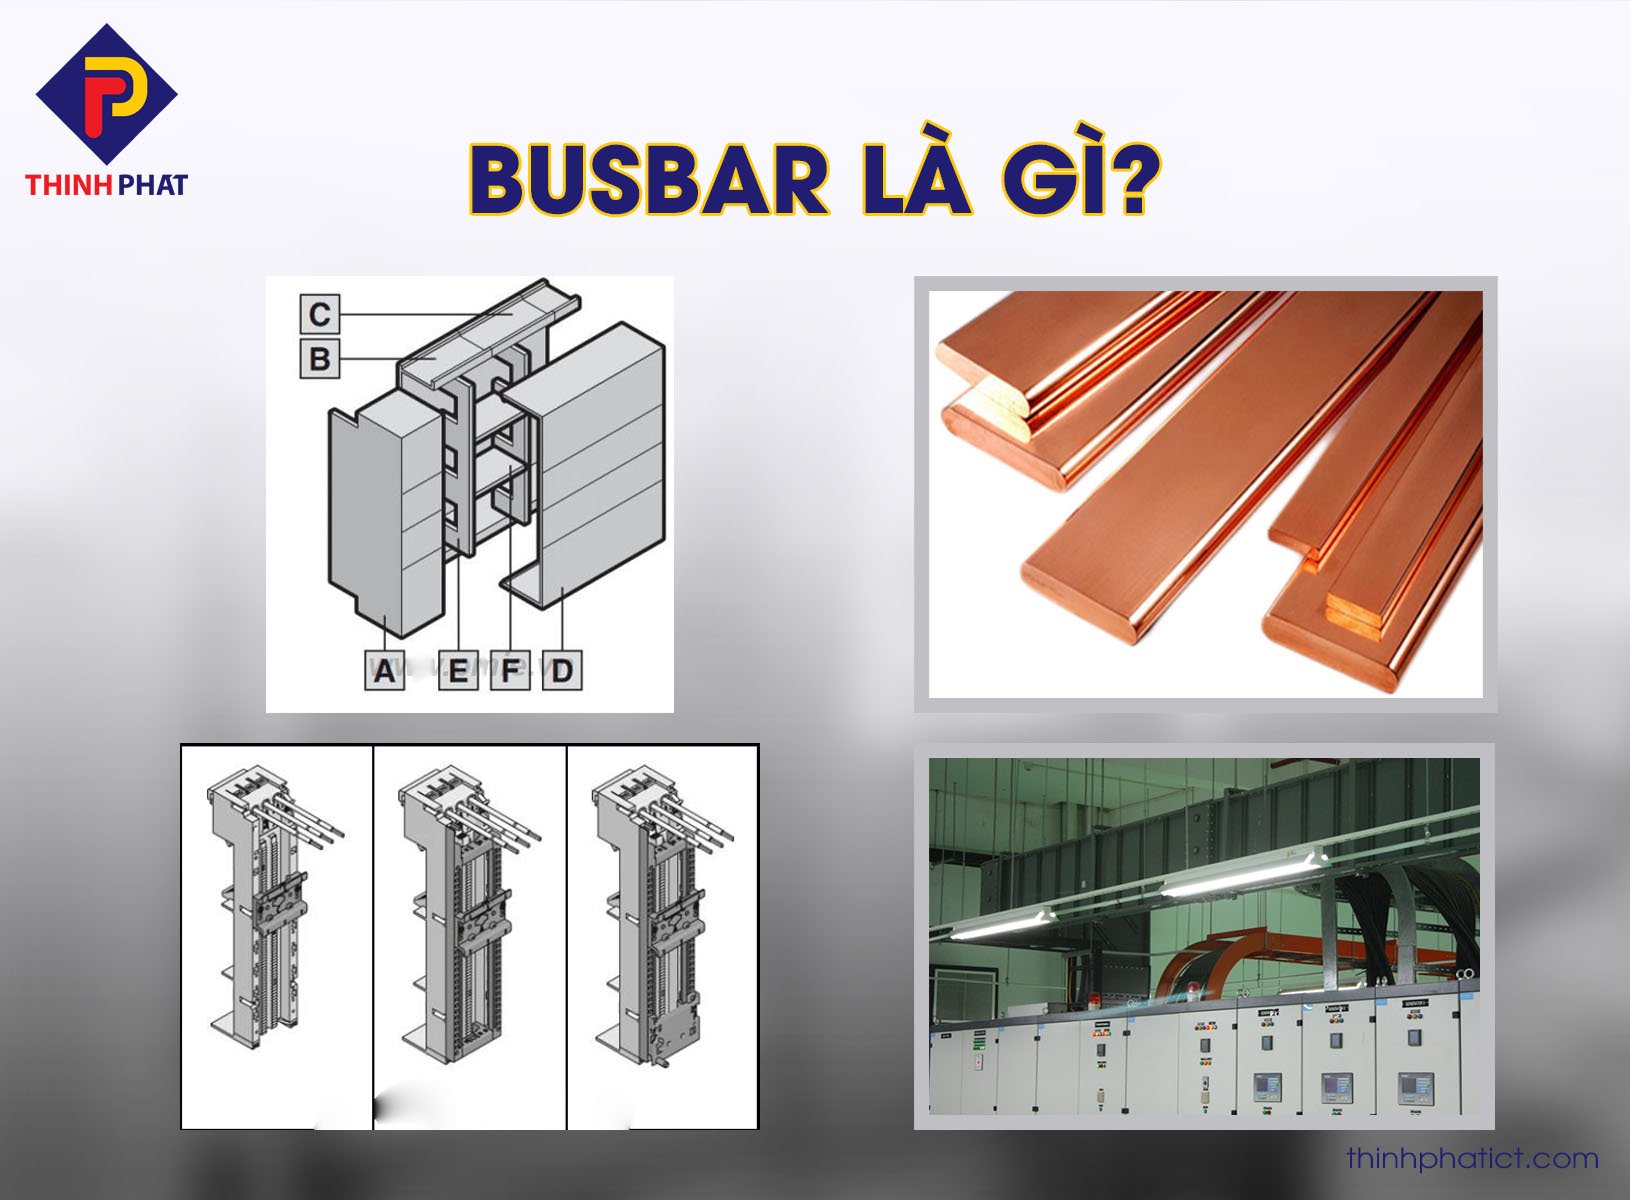 Busbar là gì? Tìm hiểu chi tiết về cấu tạo và ứng dụng của Busbar